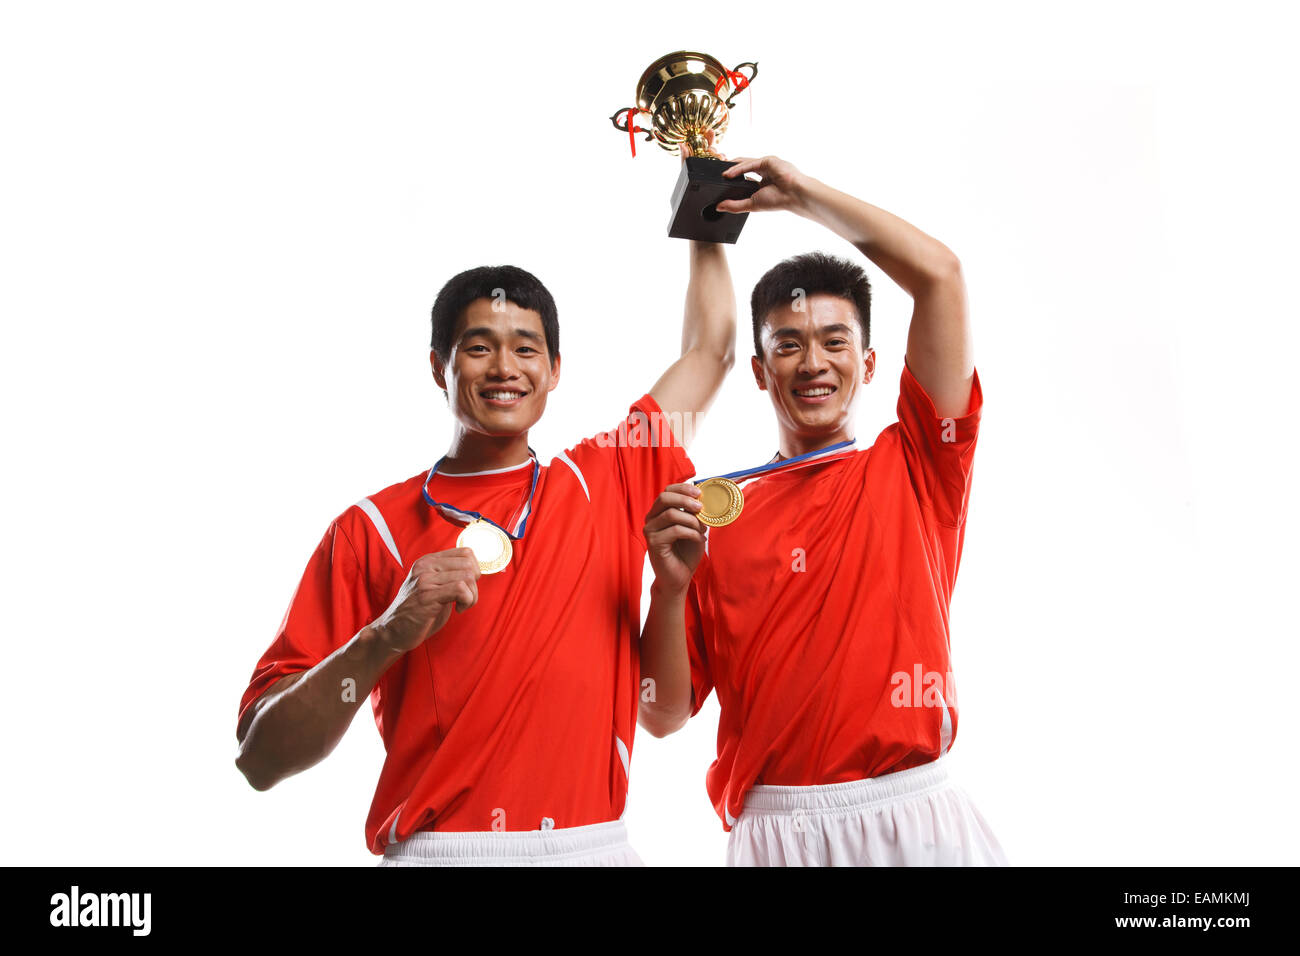 Les joueurs de football de célébrer les succès avec une médaille d'or Banque D'Images